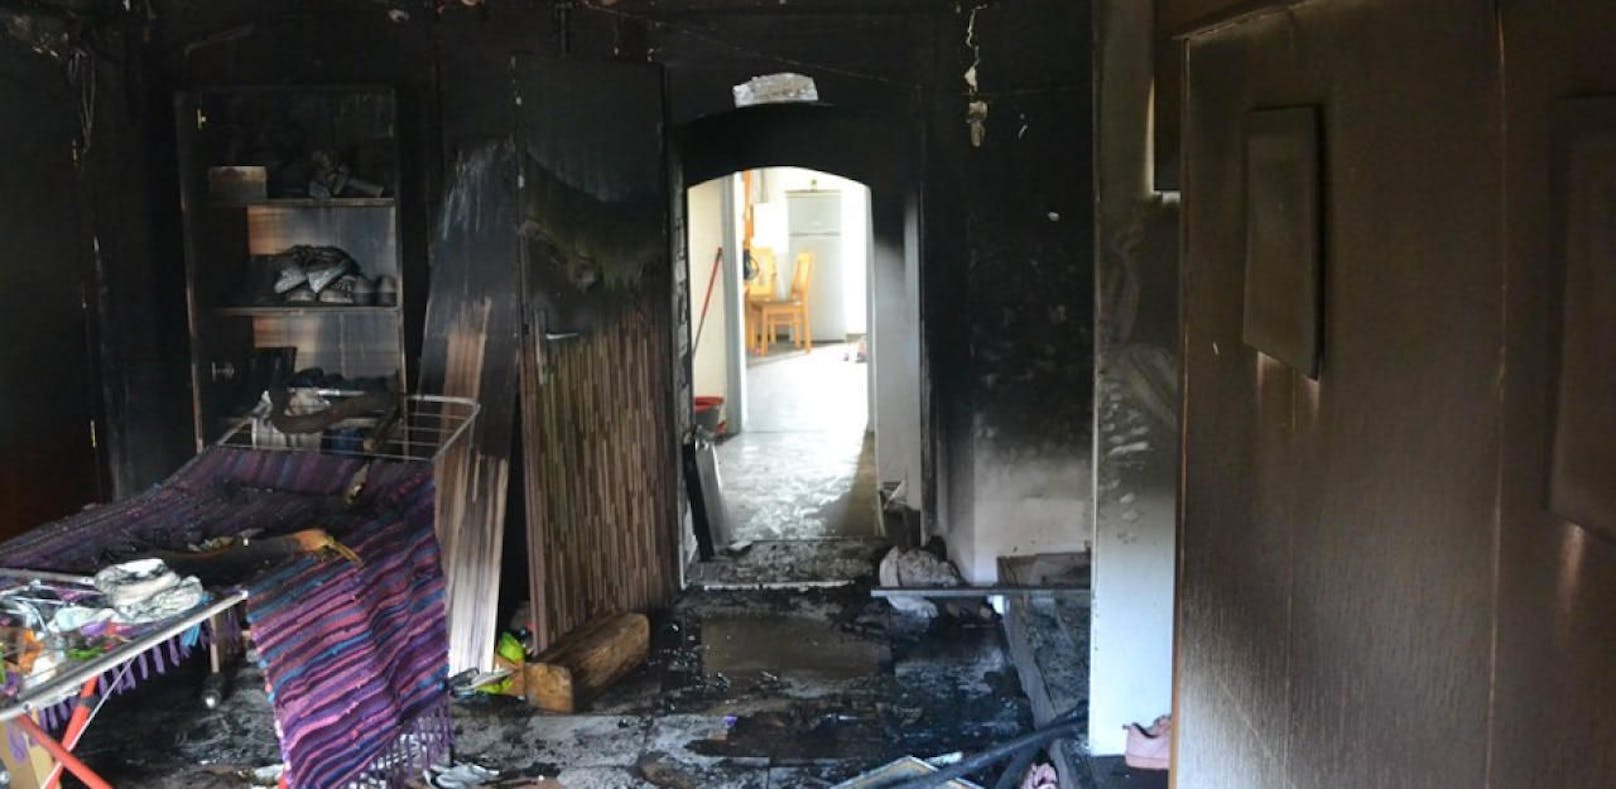 Feuer-Drama: 4 Kinder aus brennendem Haus gerettet